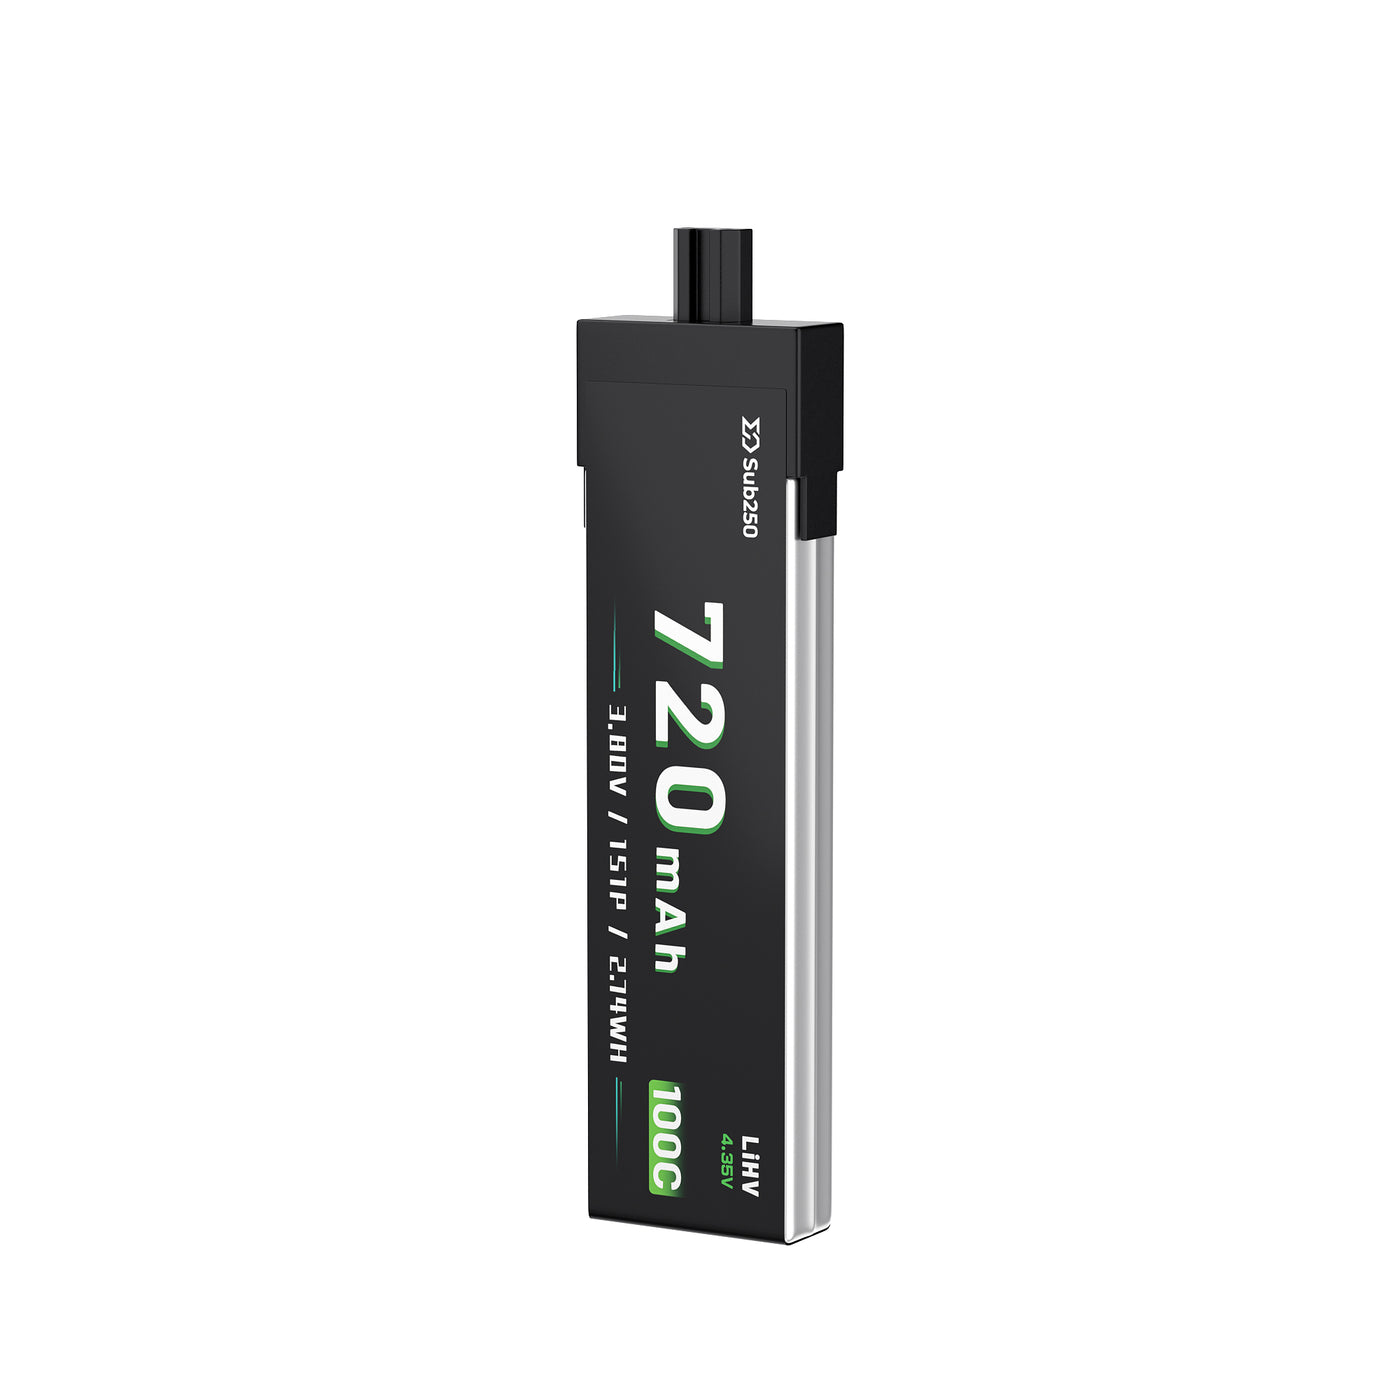 Sub250 1S  720mAh 90C Battery